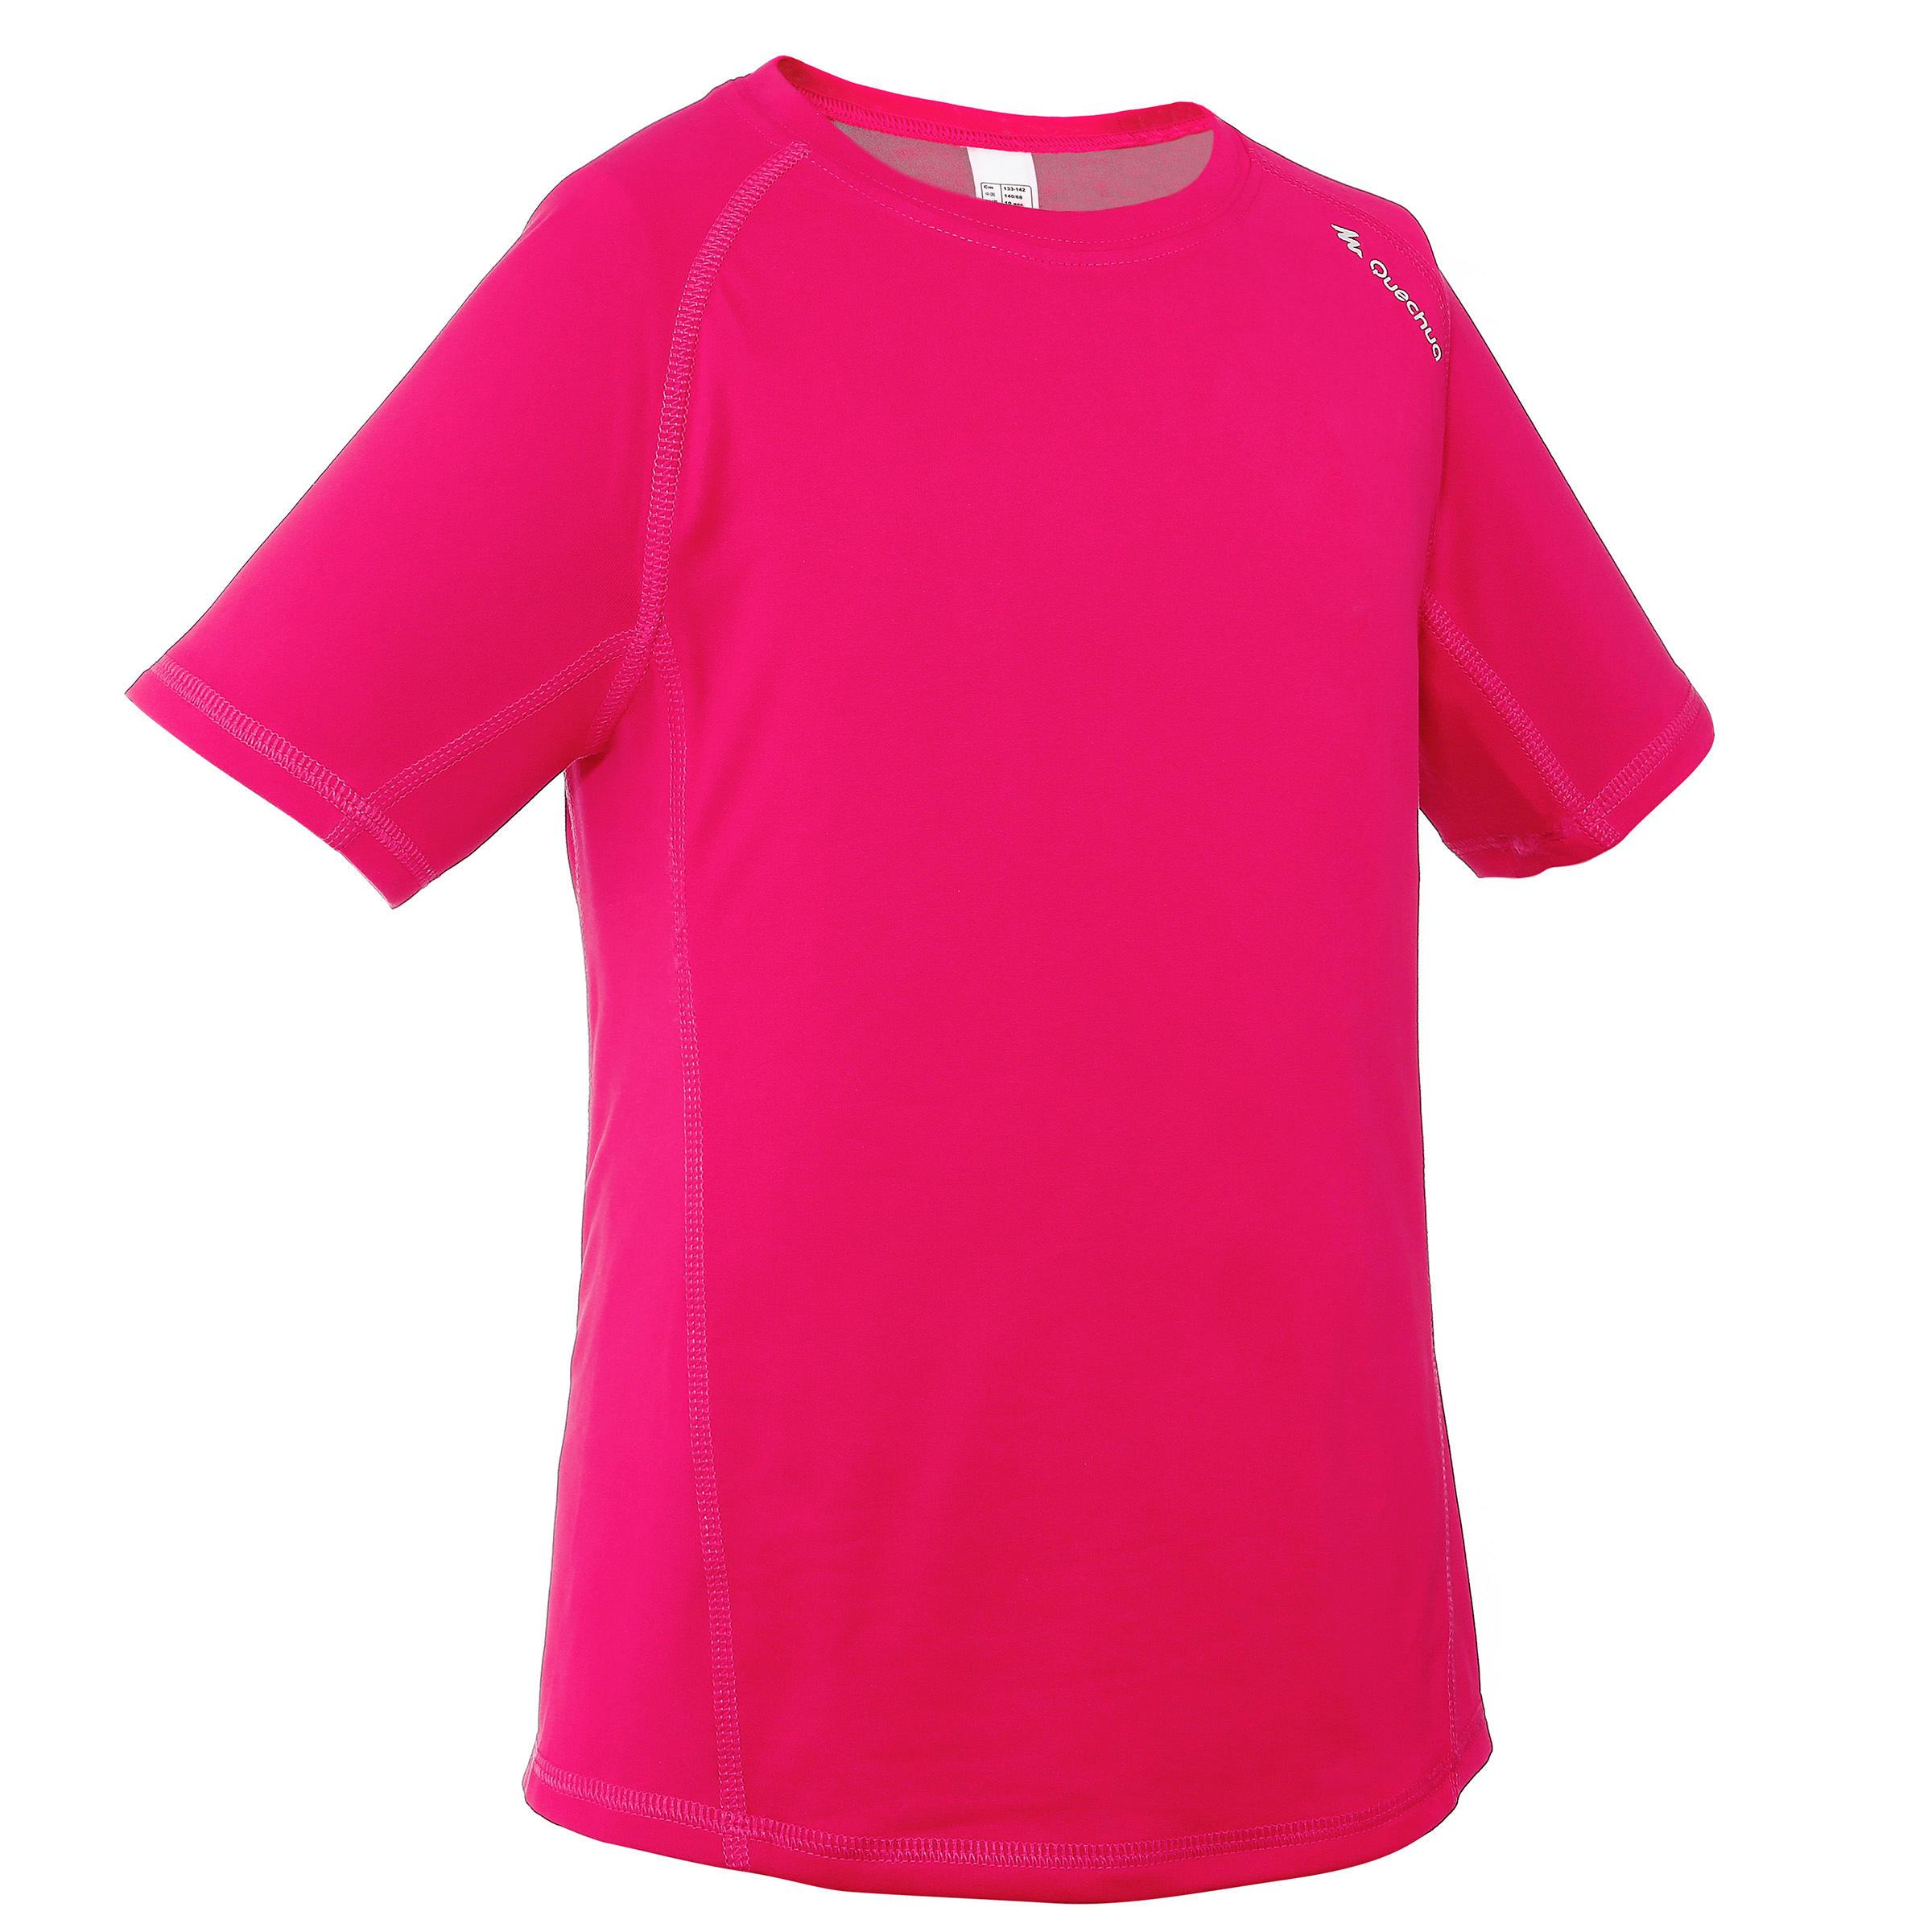 [ด่วน!! โปรโมชั่นมีจำนวนจำกัด]เสื้อยืดเดินป่าสำหรับเด็กผู้หญิงรุ่น HIKE 100 (สีชมพู)